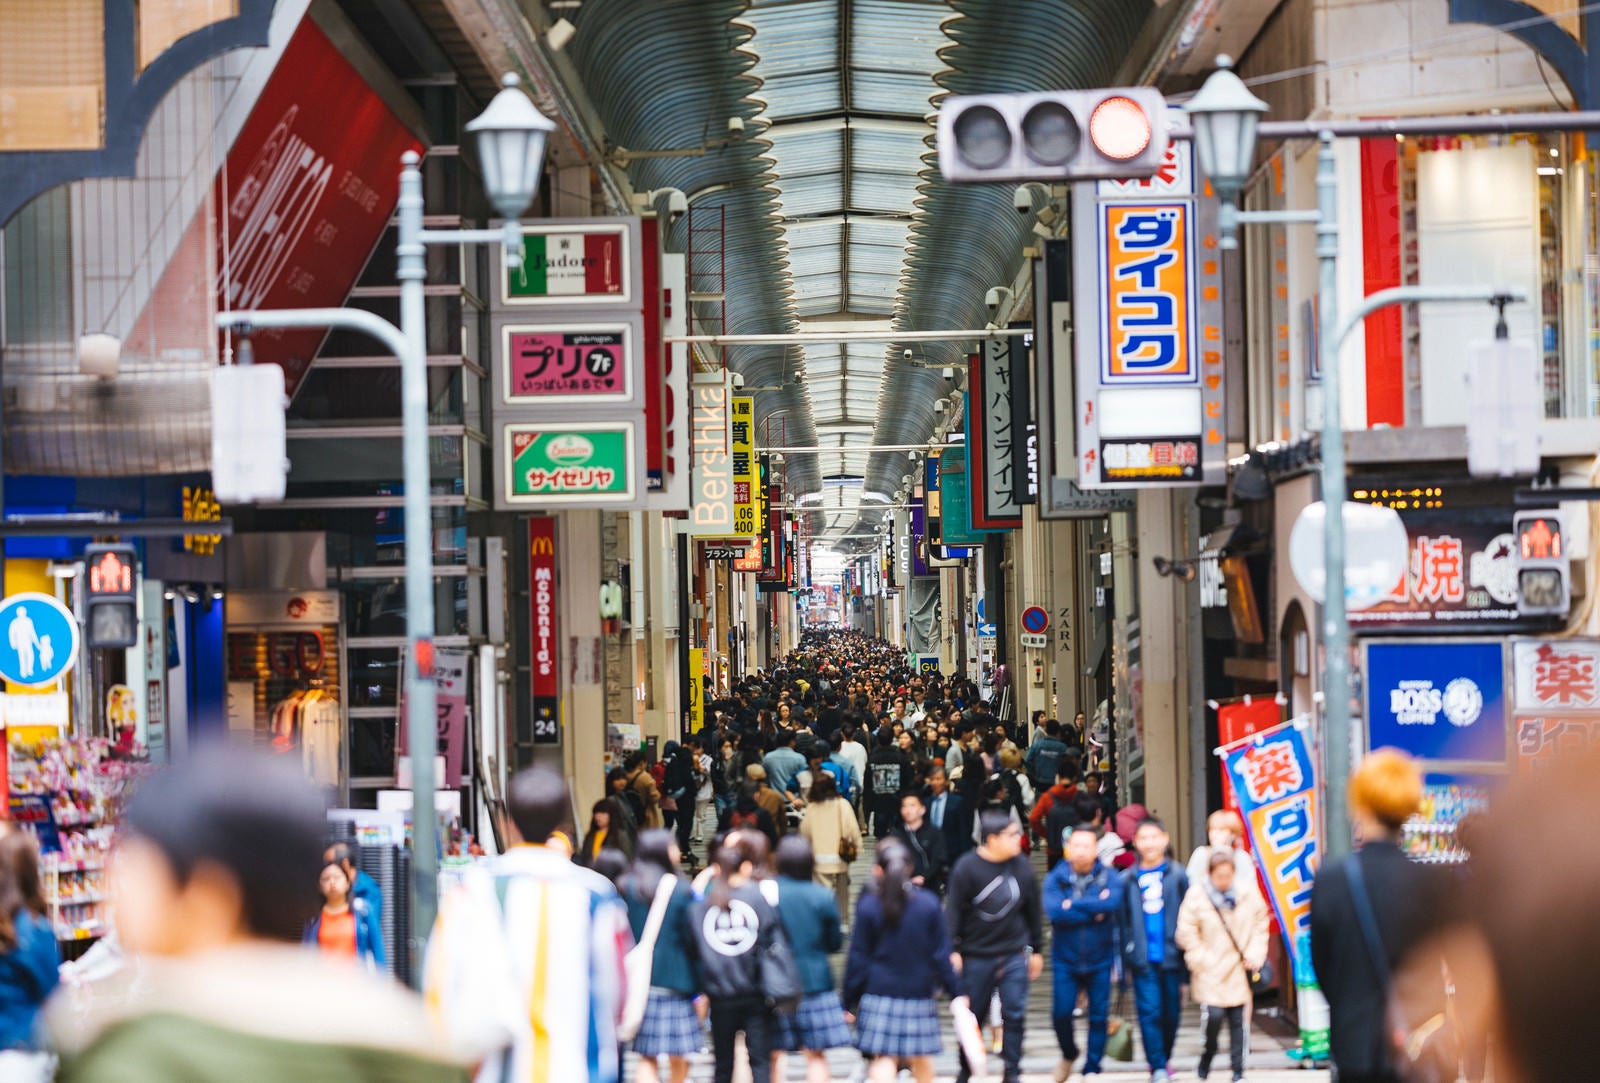 「心斎橋筋商店街の人混み」の写真